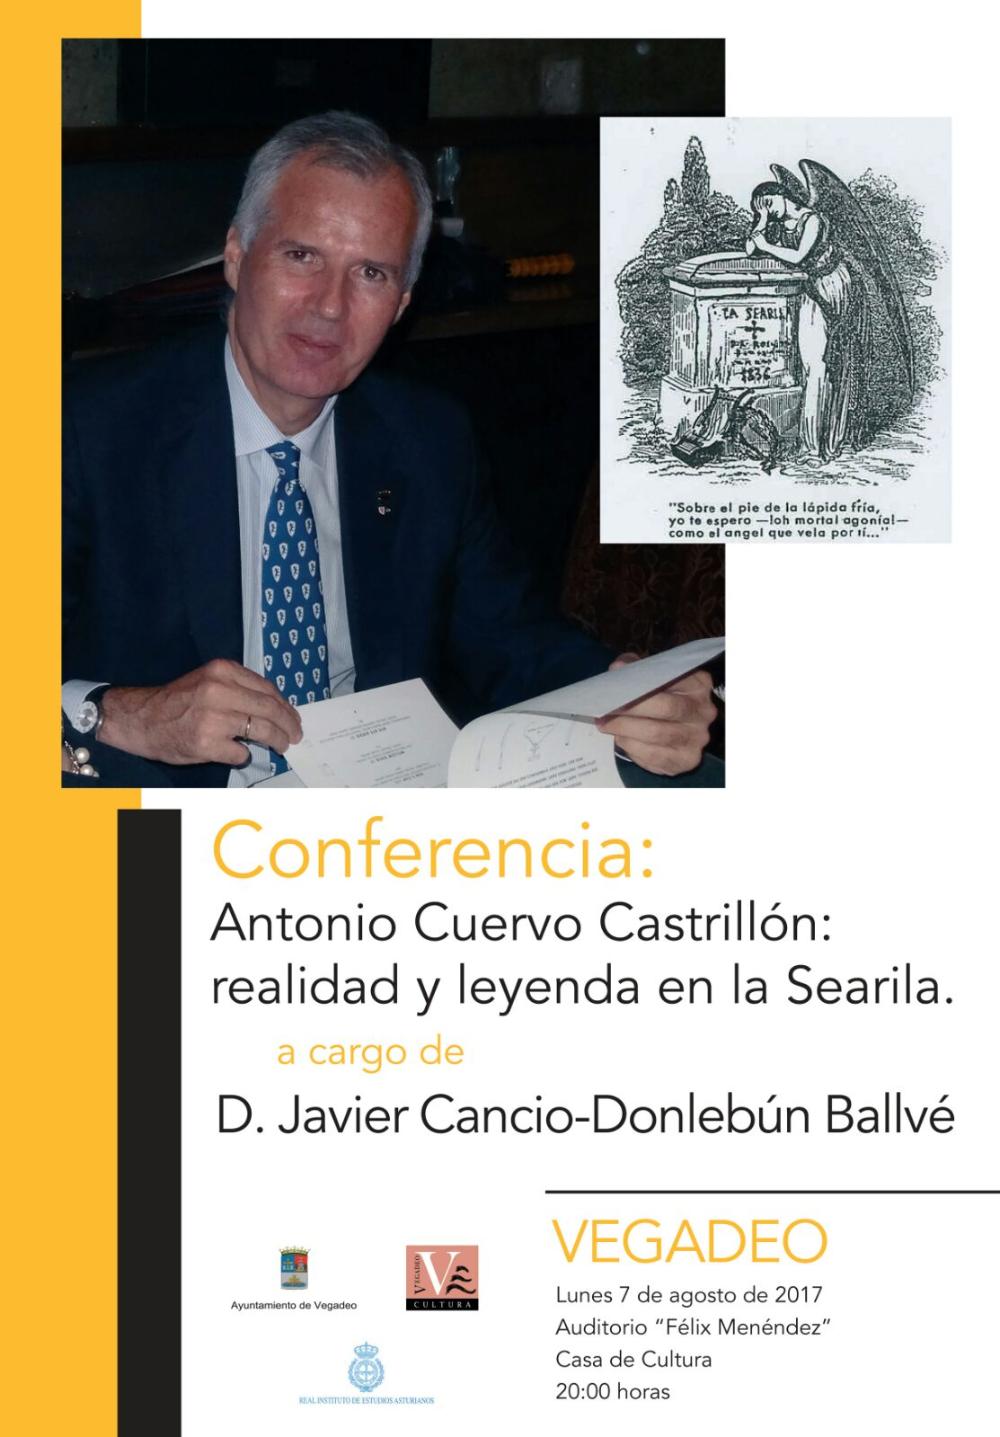 Imagen - Conferencia Antonio Cuervo Castrillón: realidad y leyenda en la Searila